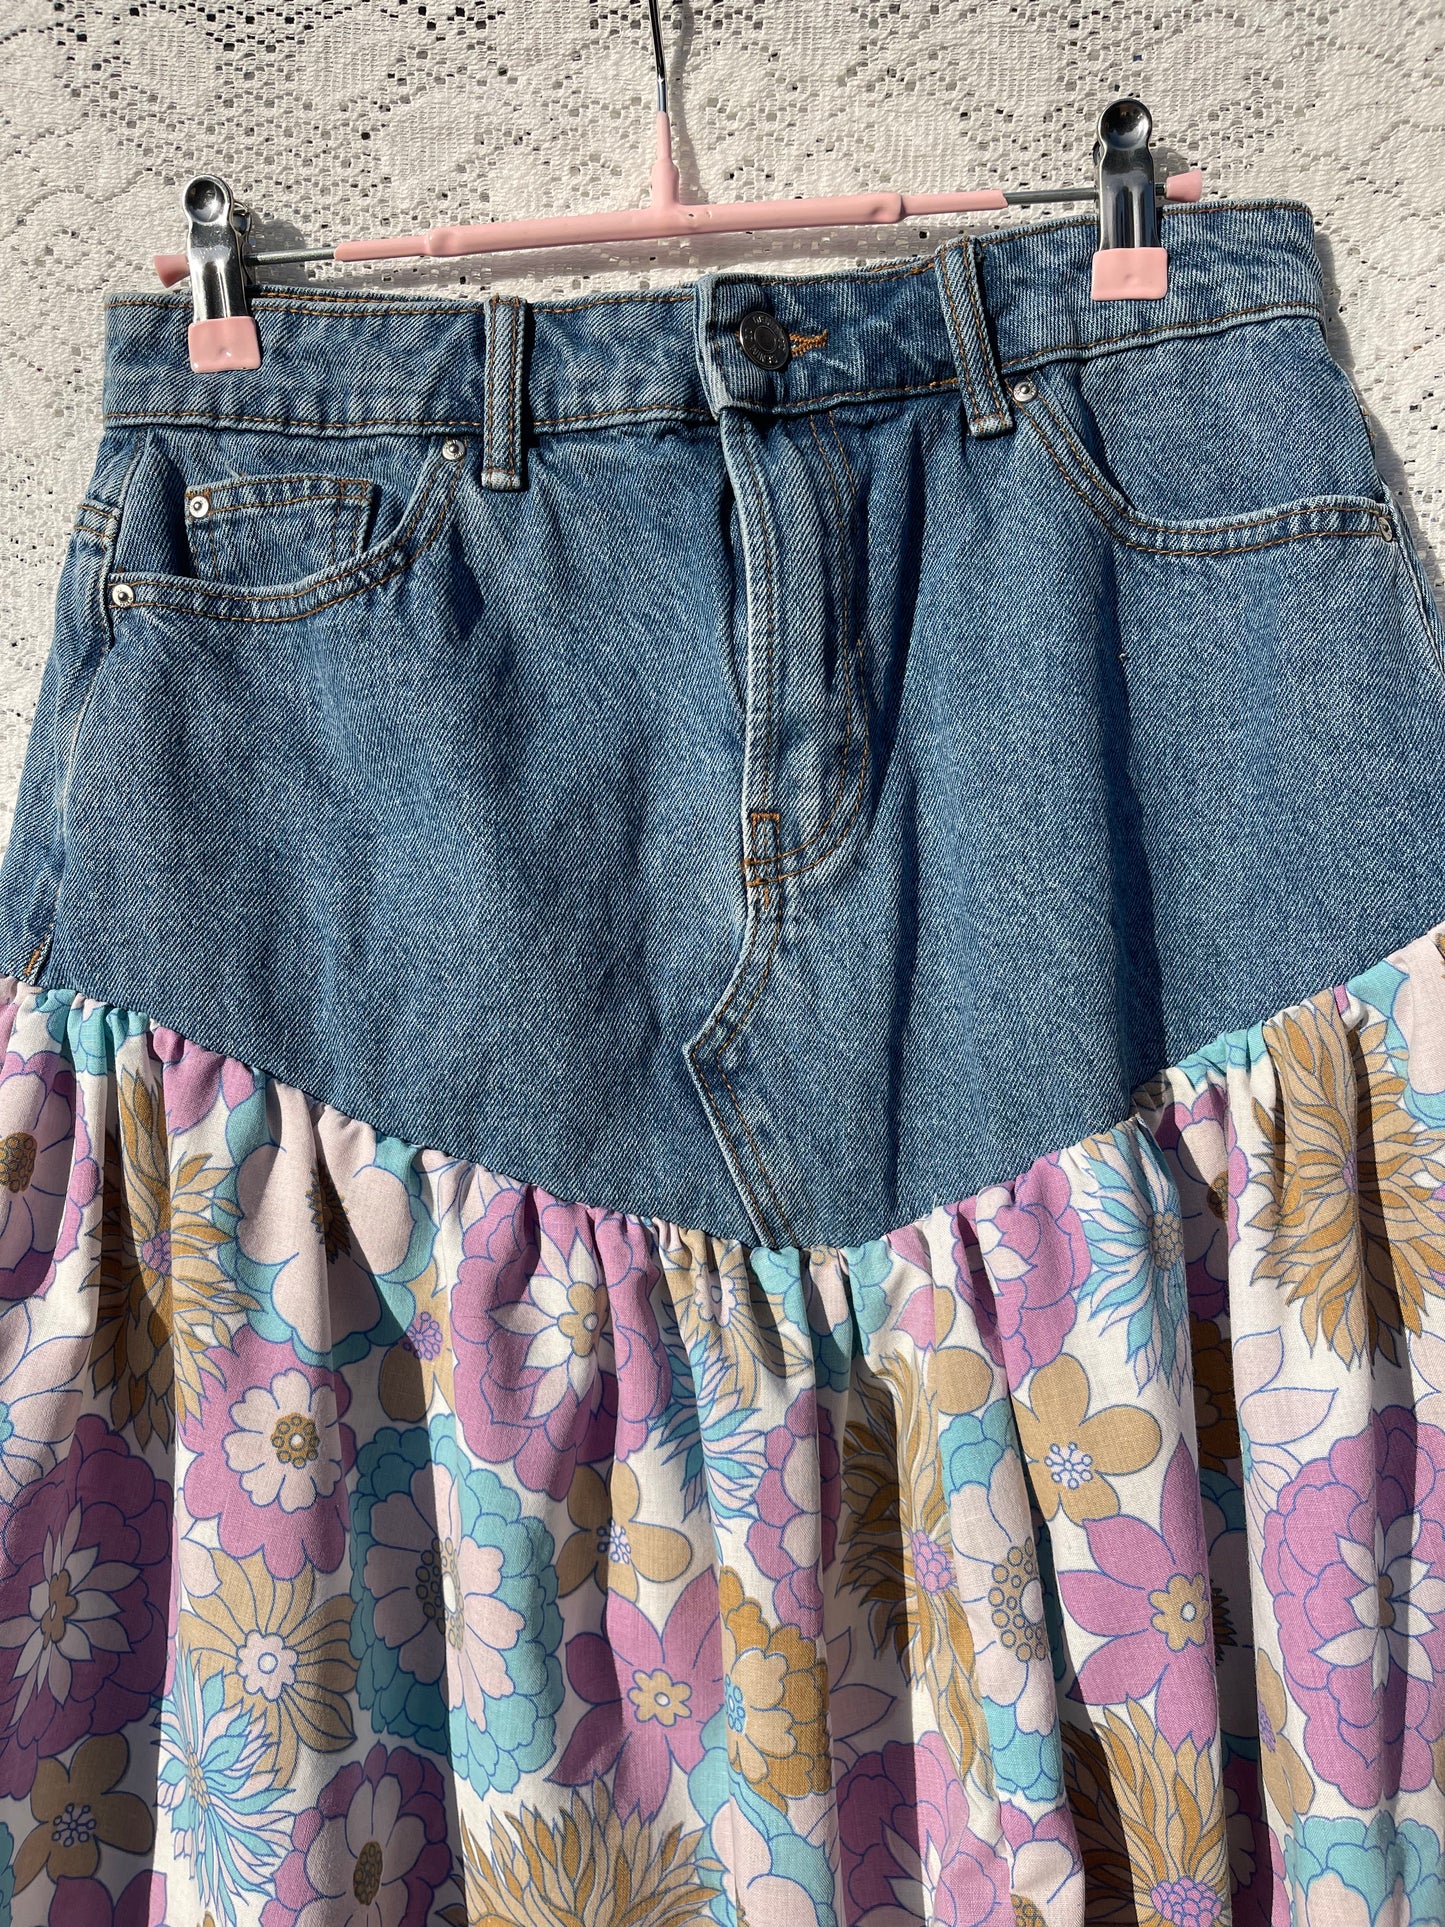 Vintage floral and denim skirt